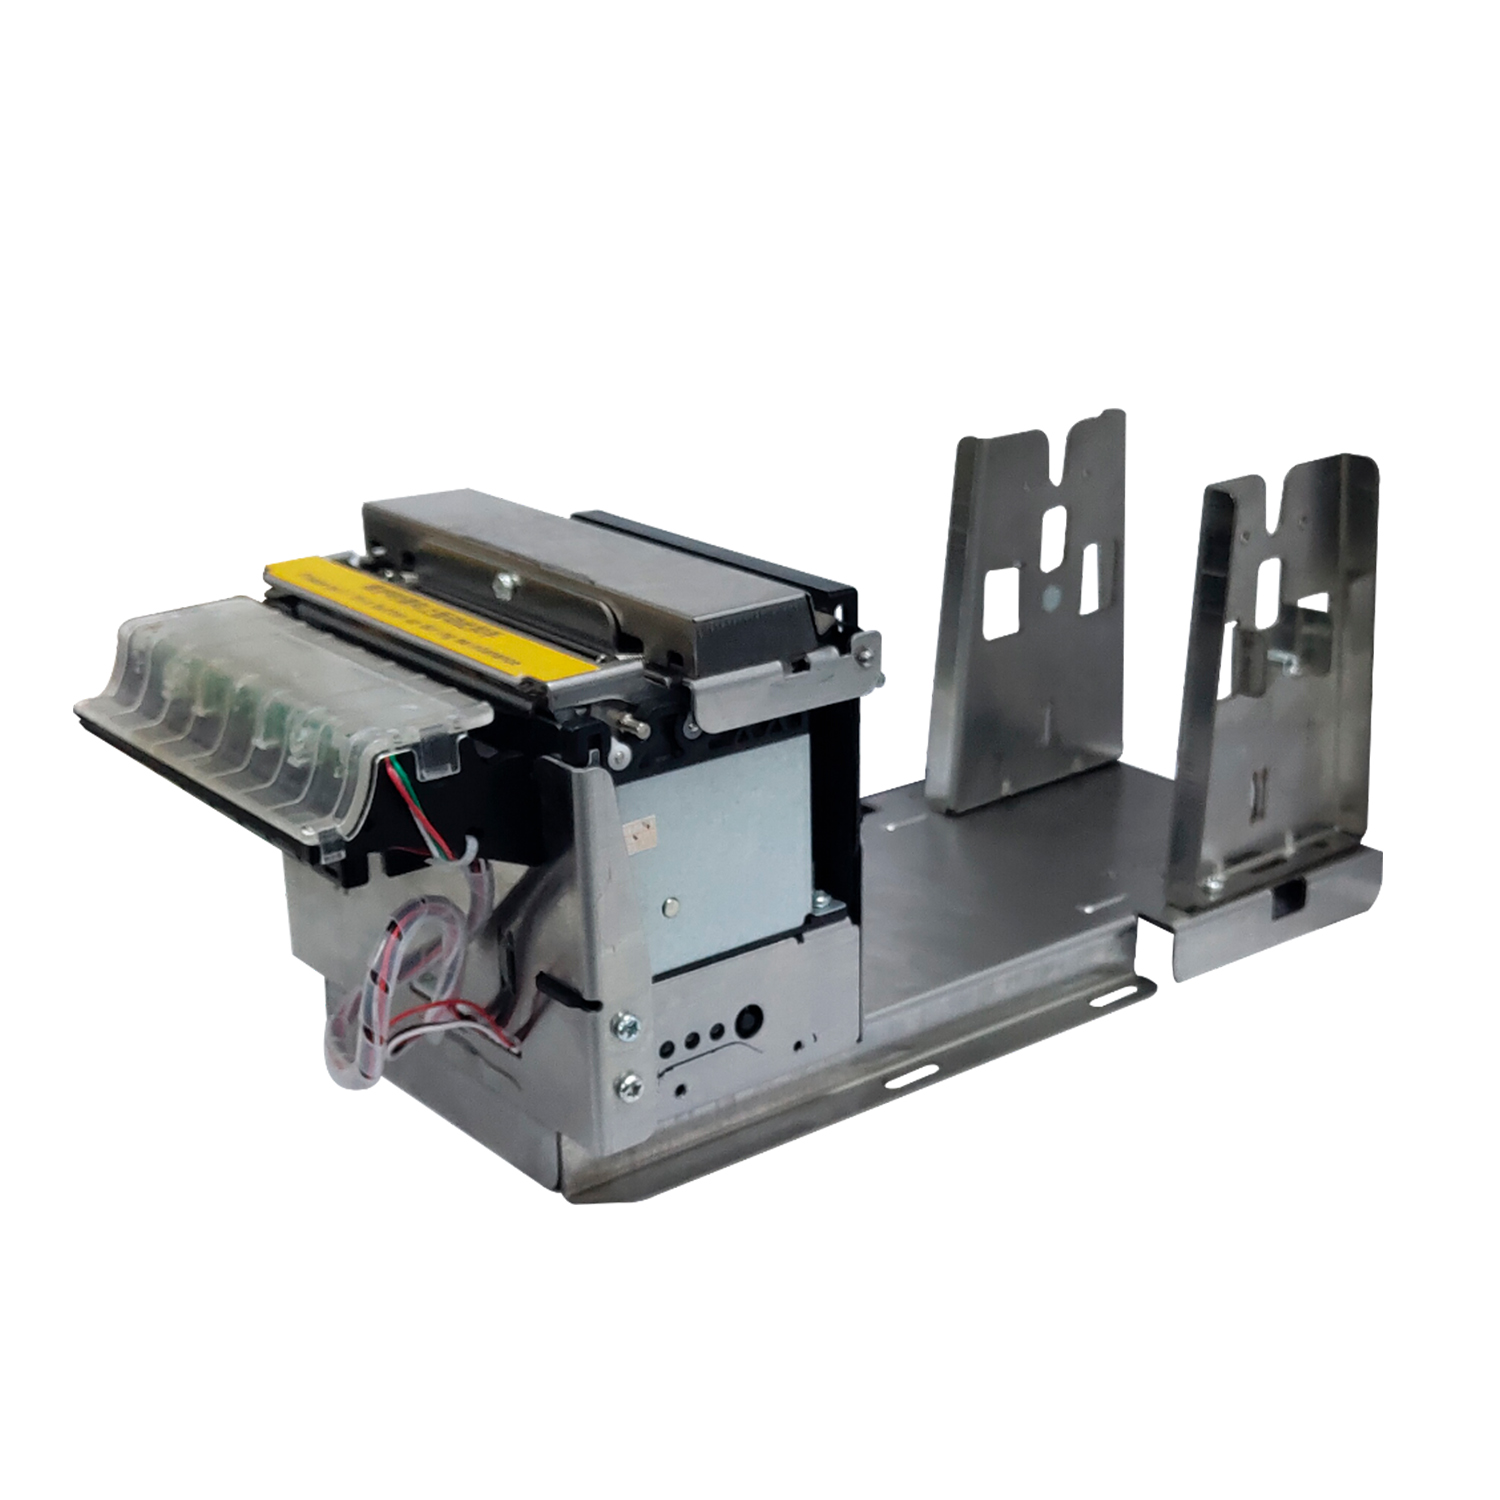 HCC-EU805 80mm ESC/POS Kiosk 嵌入式打印机模块带纸架 